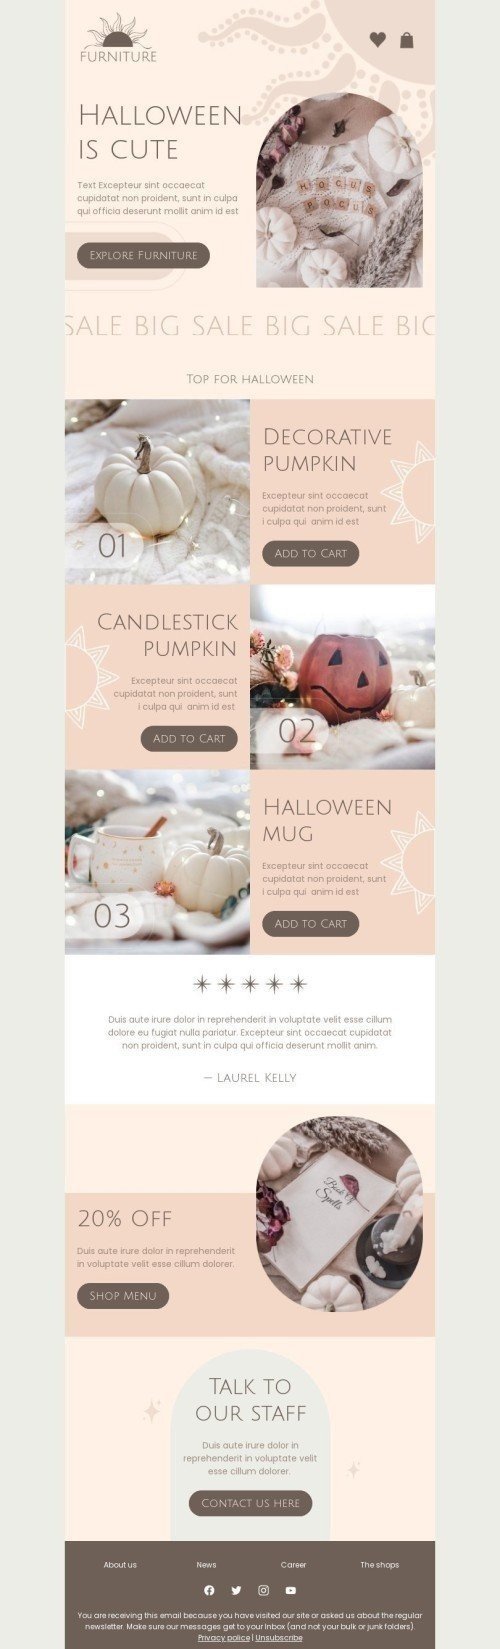 Modèle de courrier électronique Halloween «Halloween est mignon» pour le secteur Mobiliers, Intérieur & DIY Affichage ordinateur